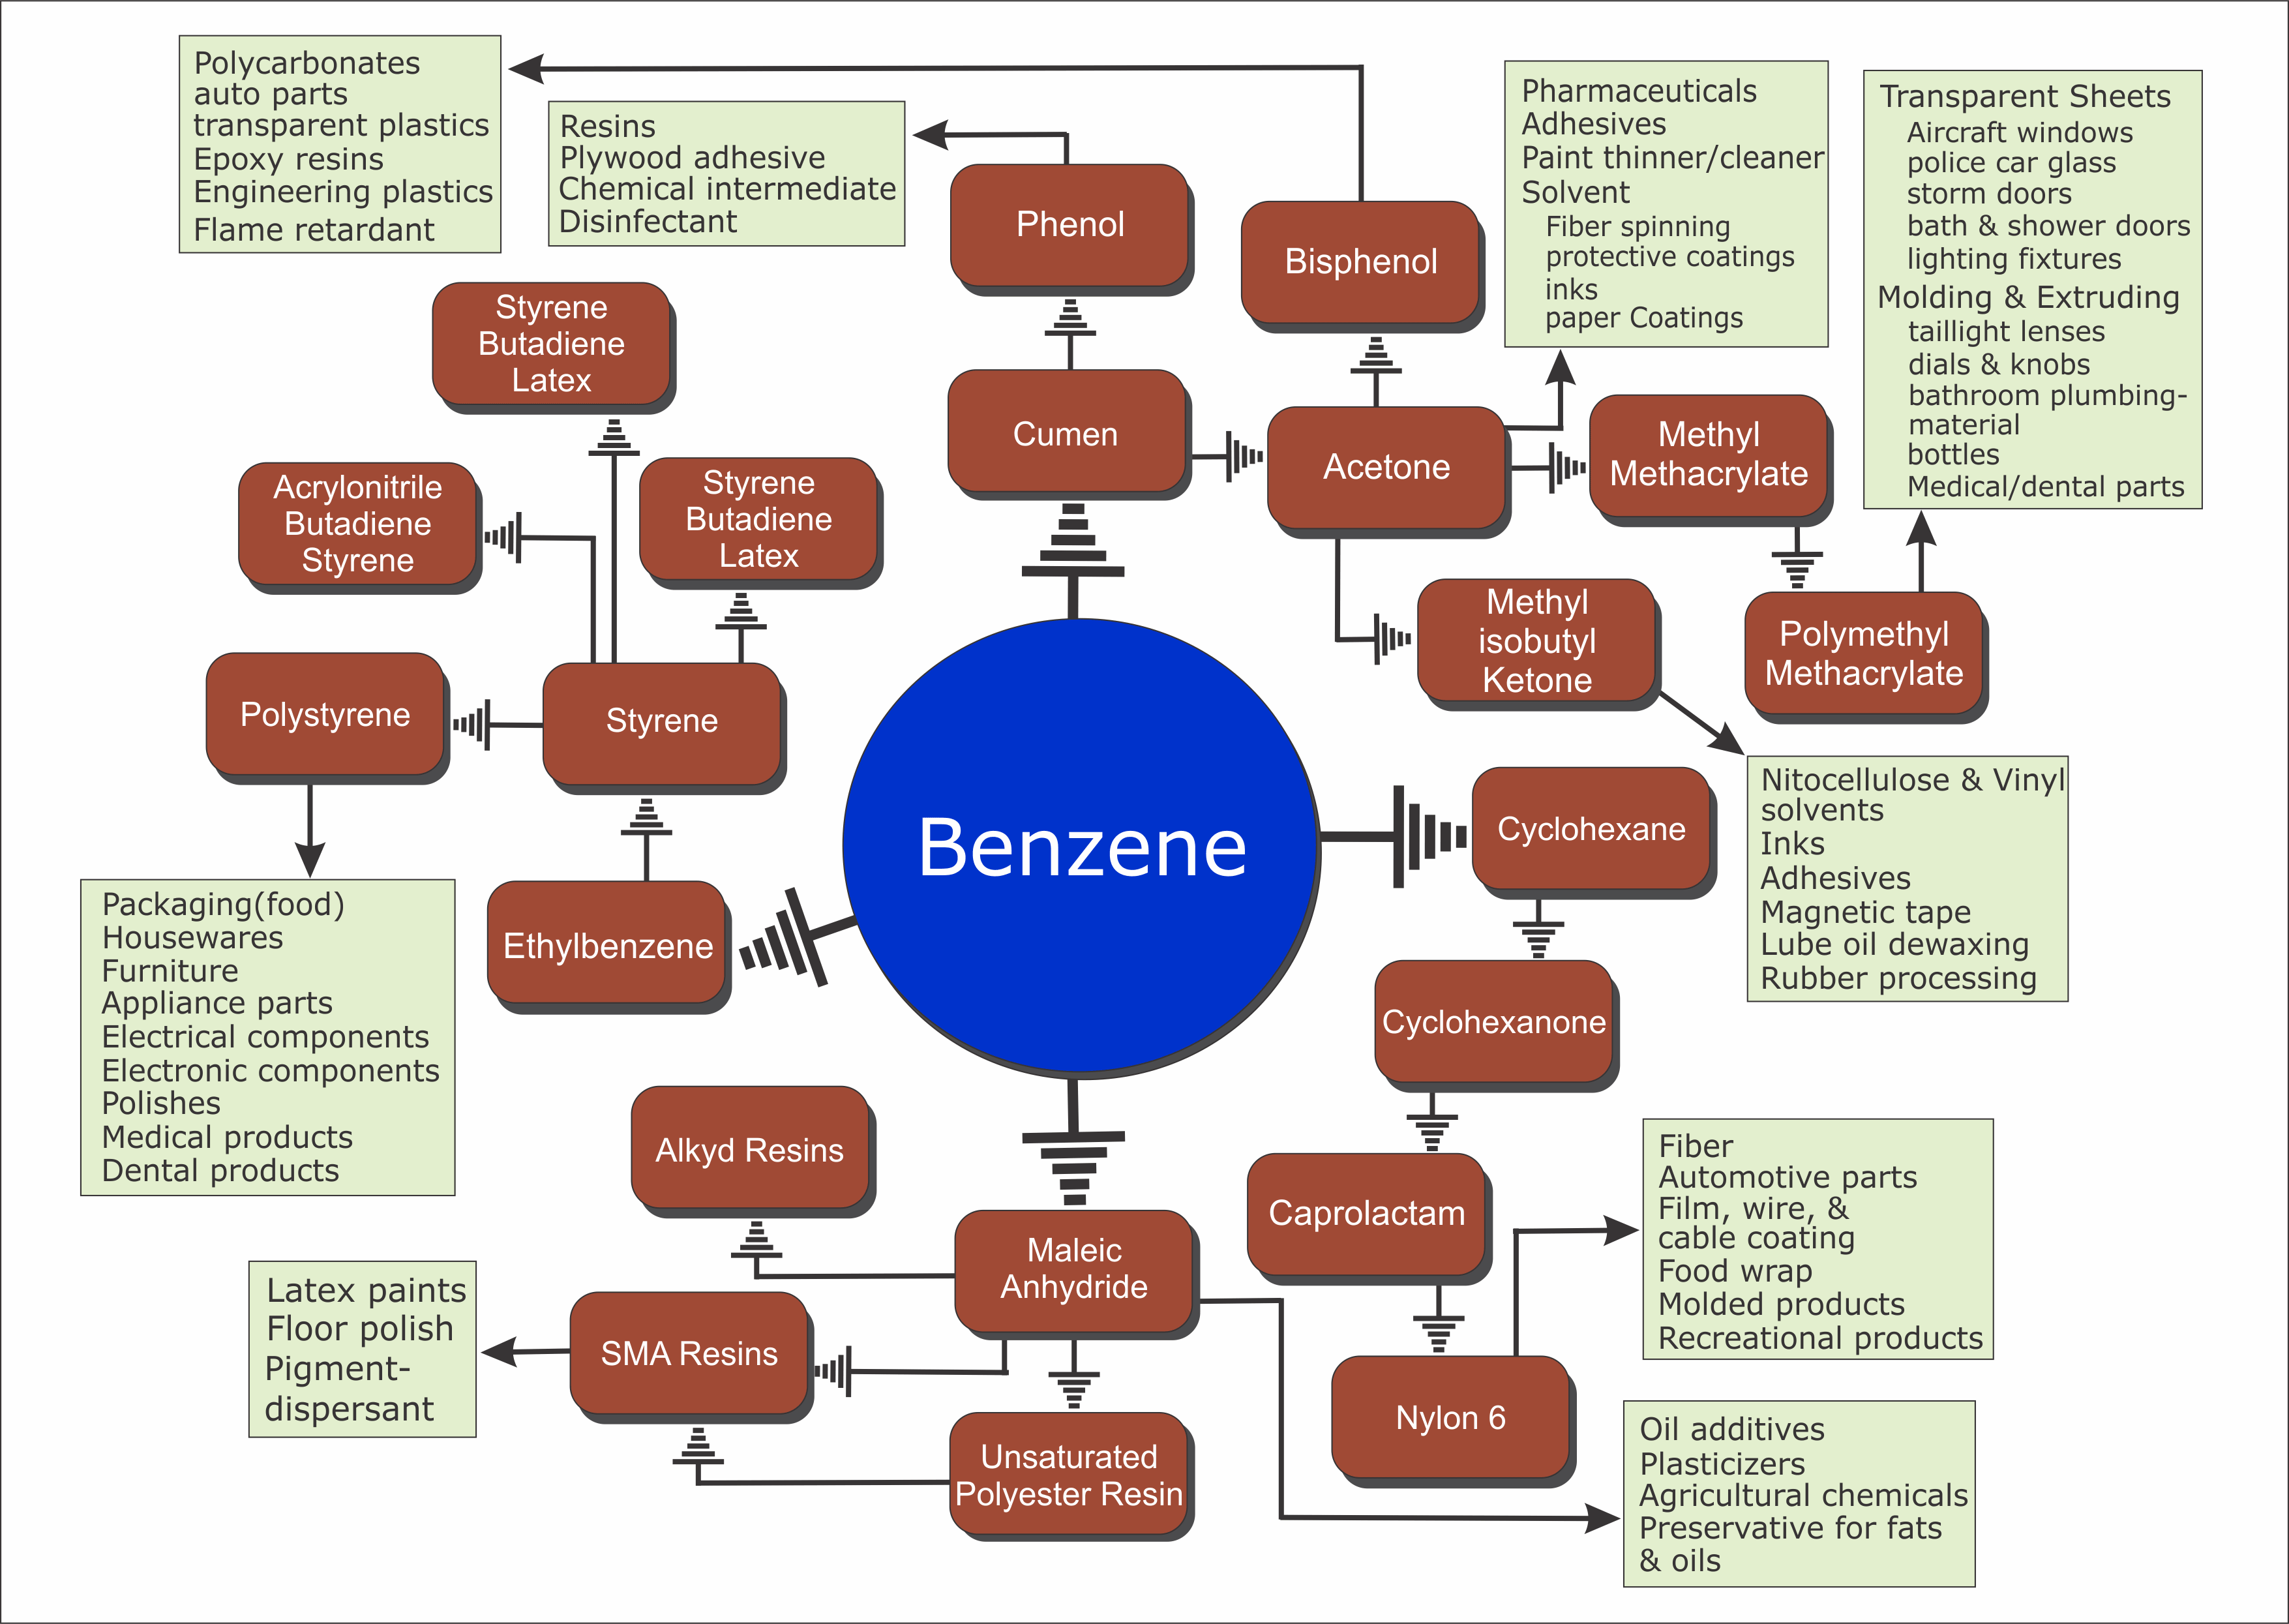 Benzenee